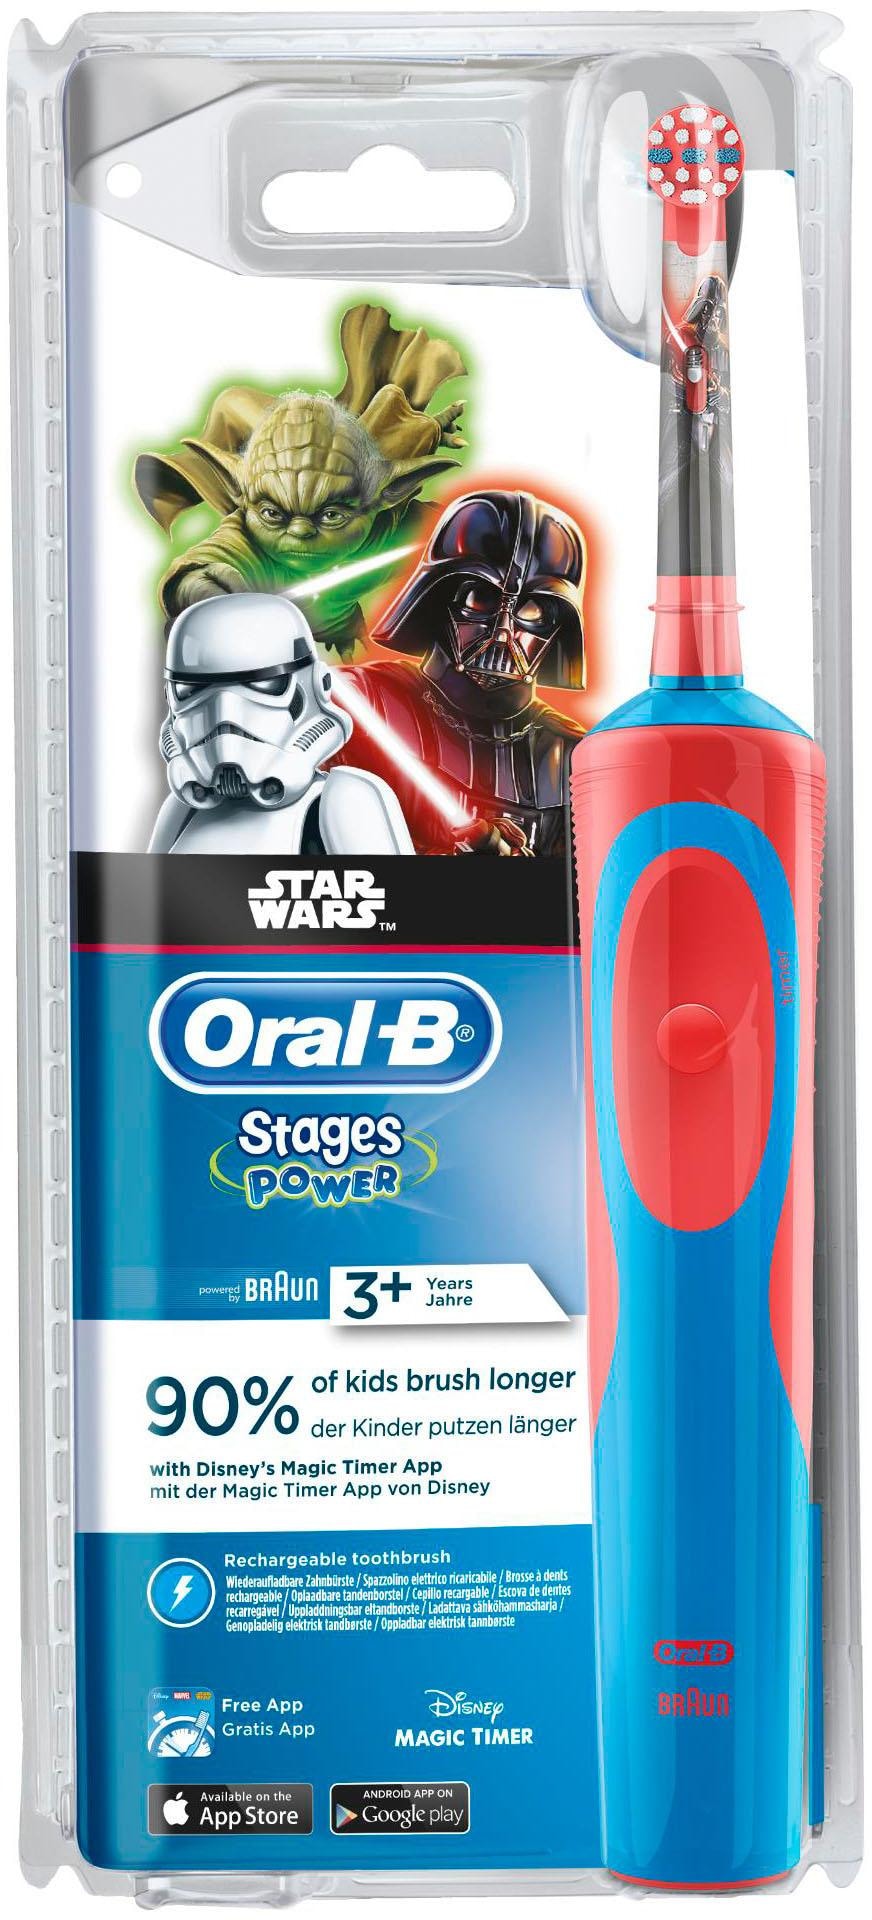 Oral B Elektrische Zahnbürste »Stages Power Star Wars«, 1 St. Aufsteckbürsten, inklusive Reiseetui